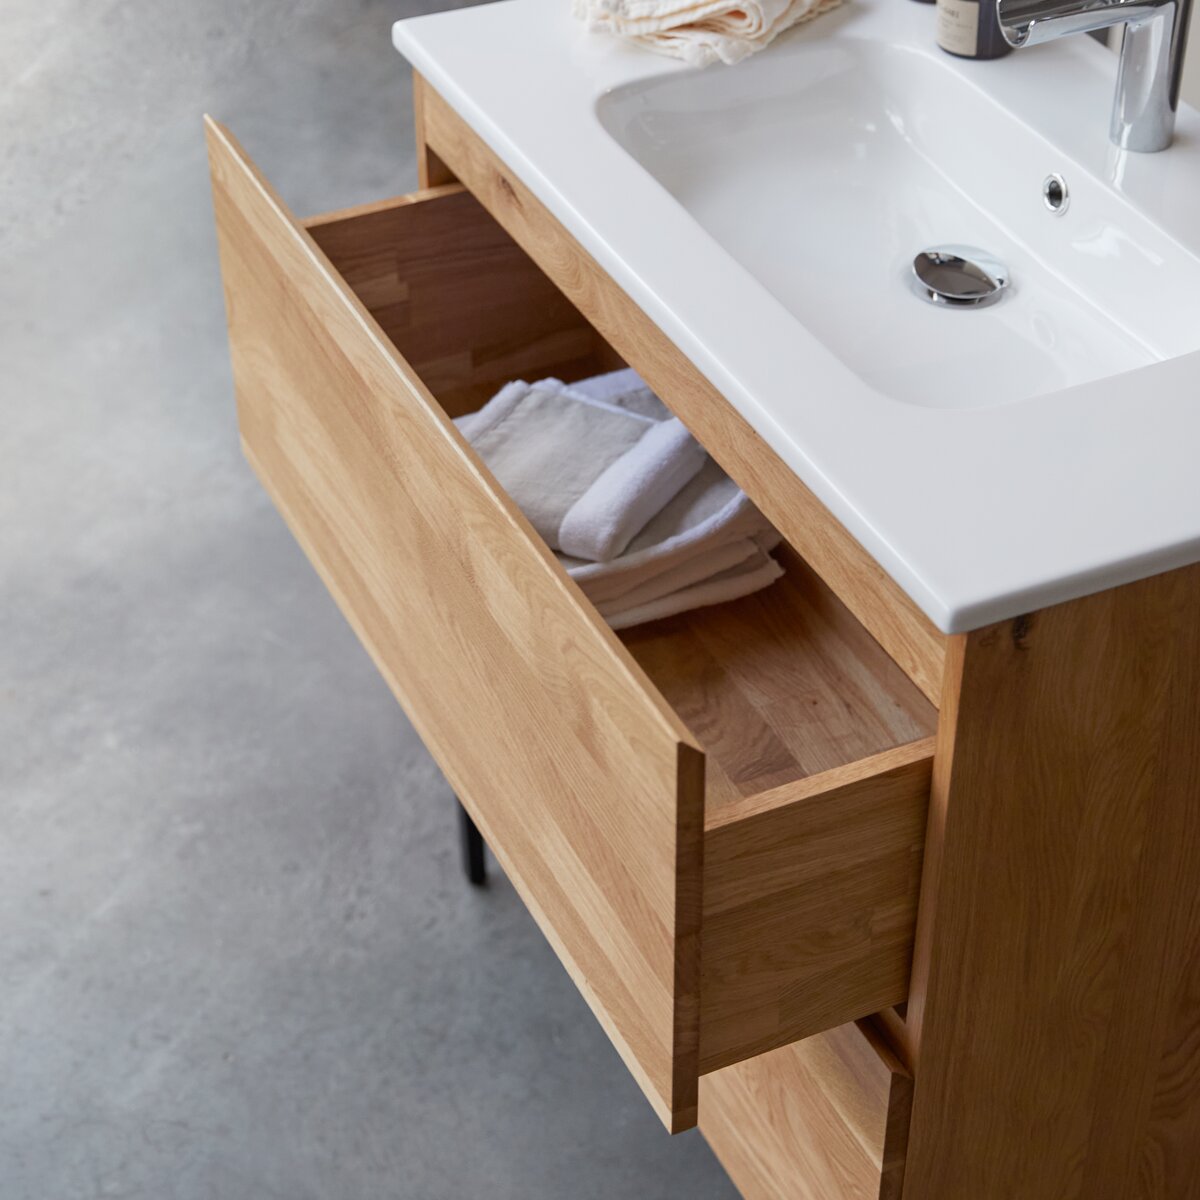 Mueble de baño Easy en roble macizo y cerámica 80 cm - Baño